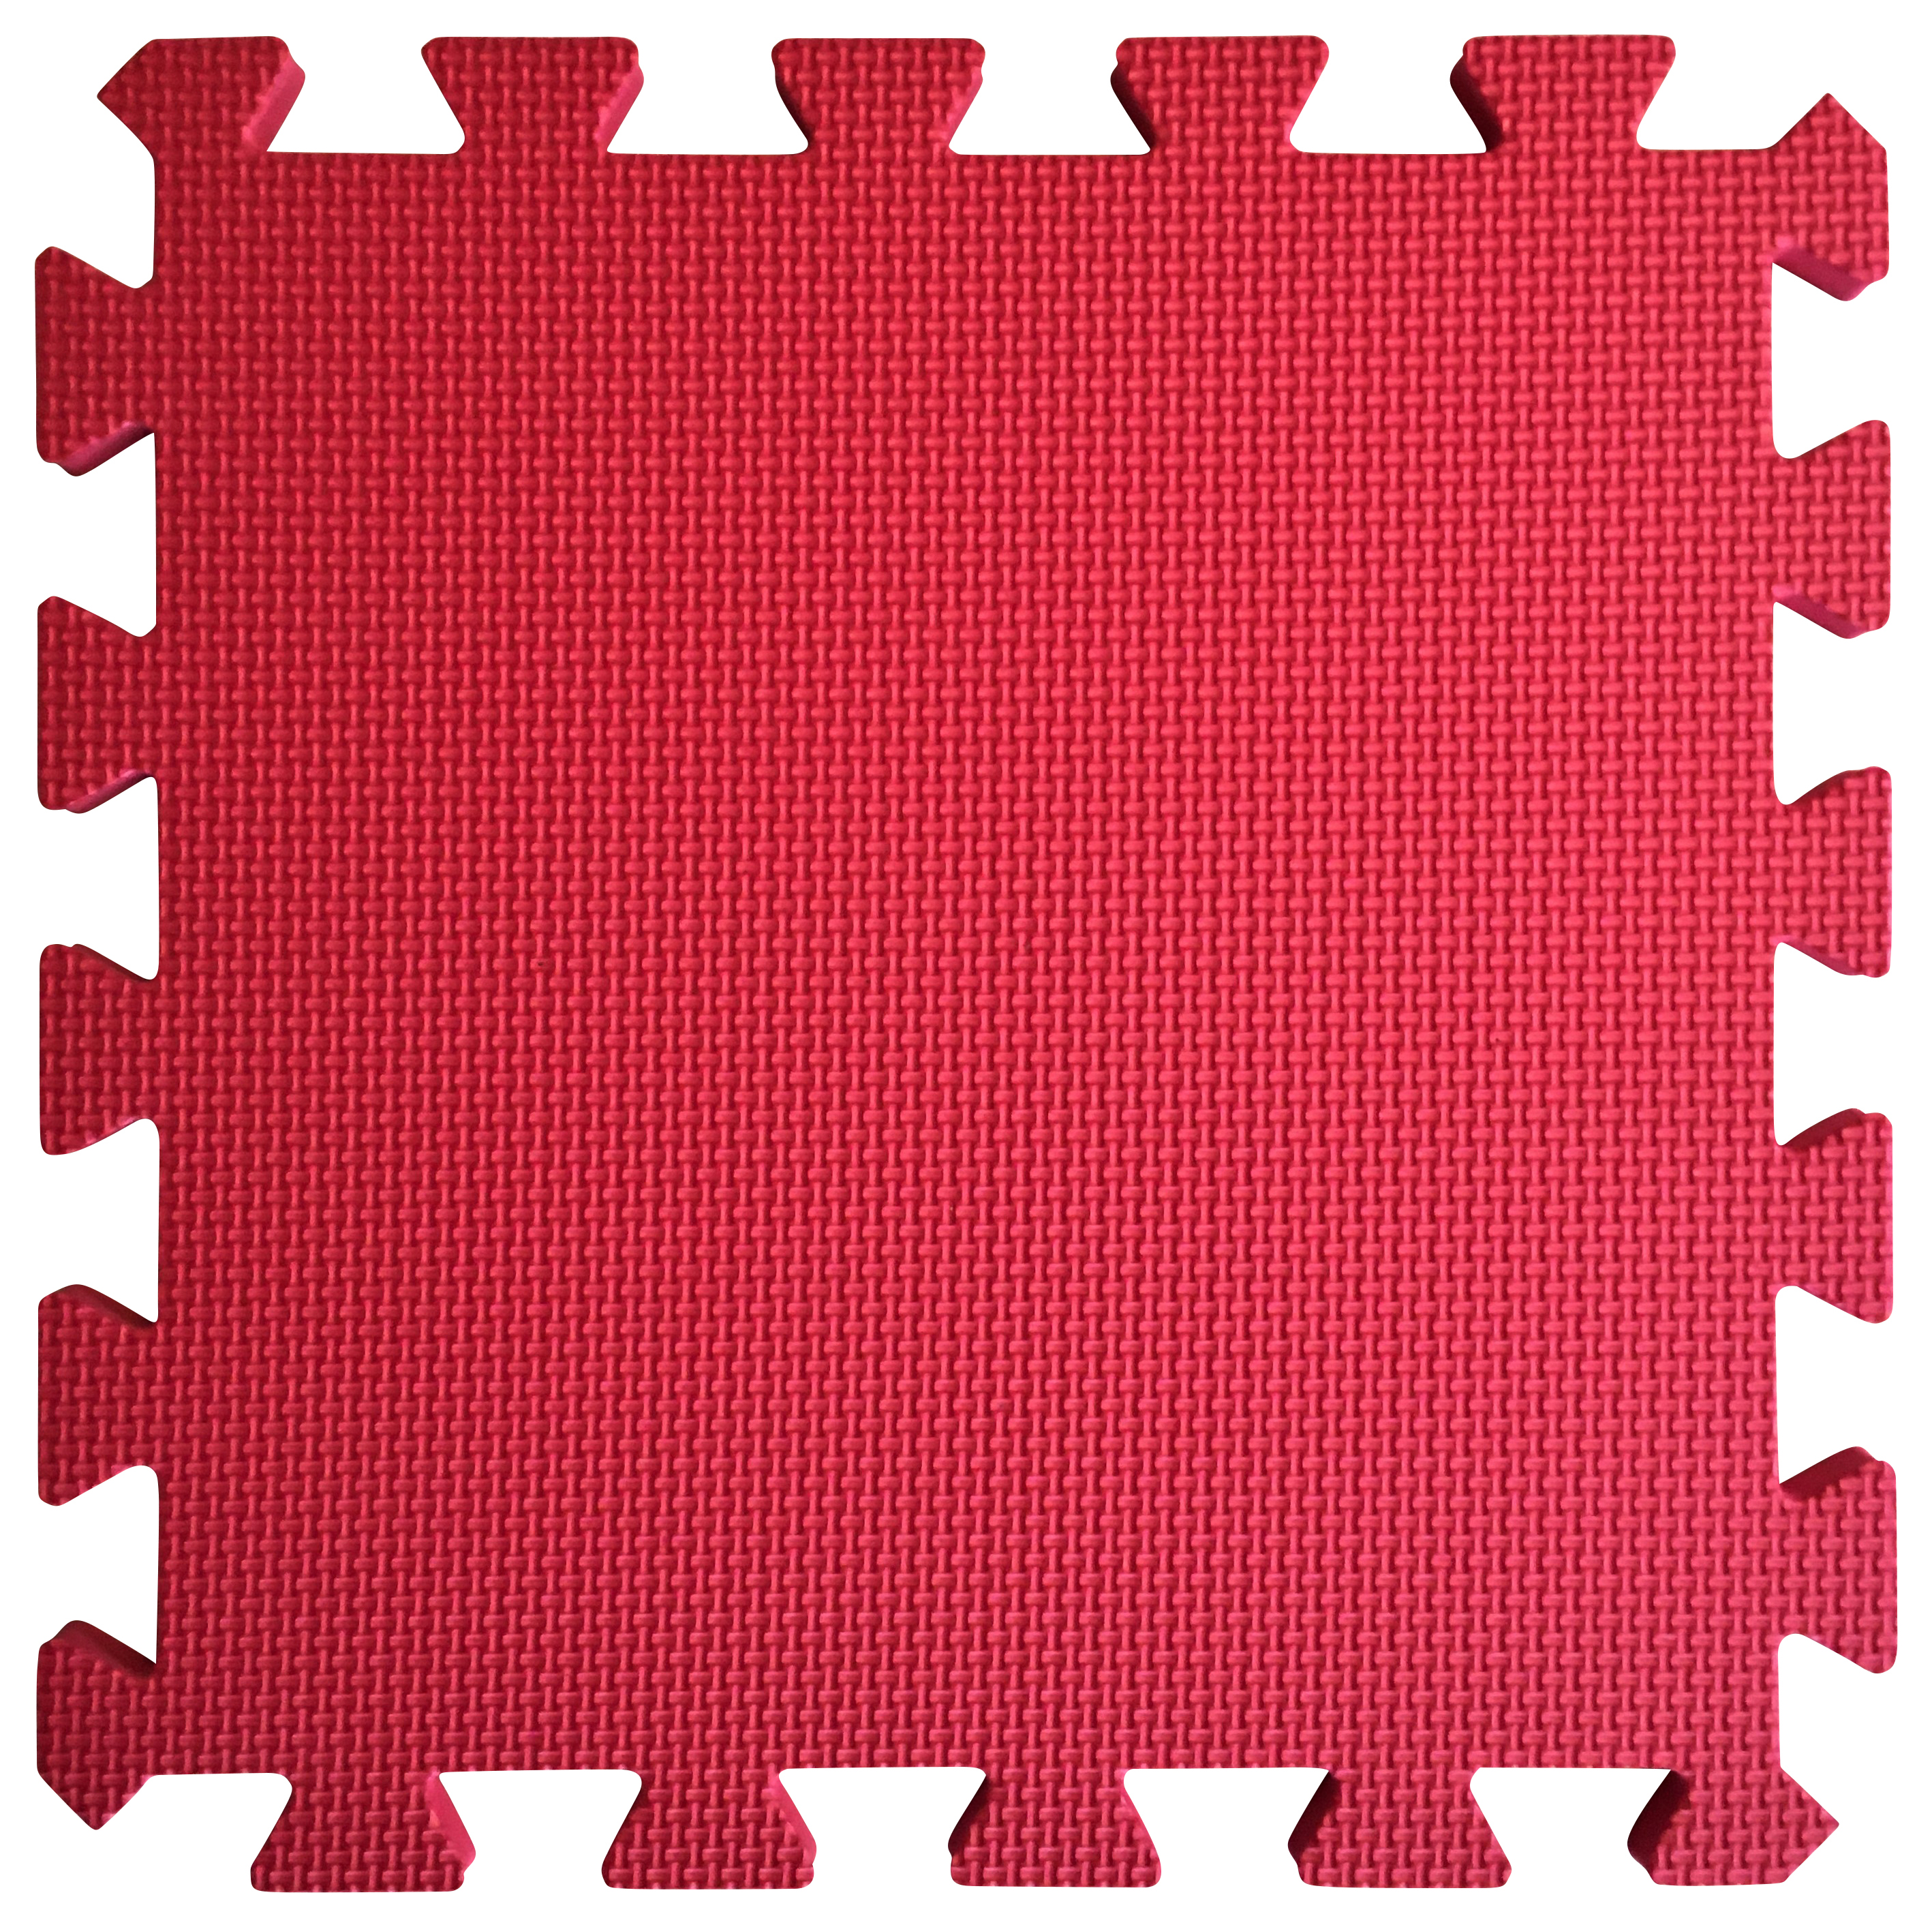 Image of Warm Floor Red Interlocking Floor Tiles for Garden Buildings - 7 x 5ft